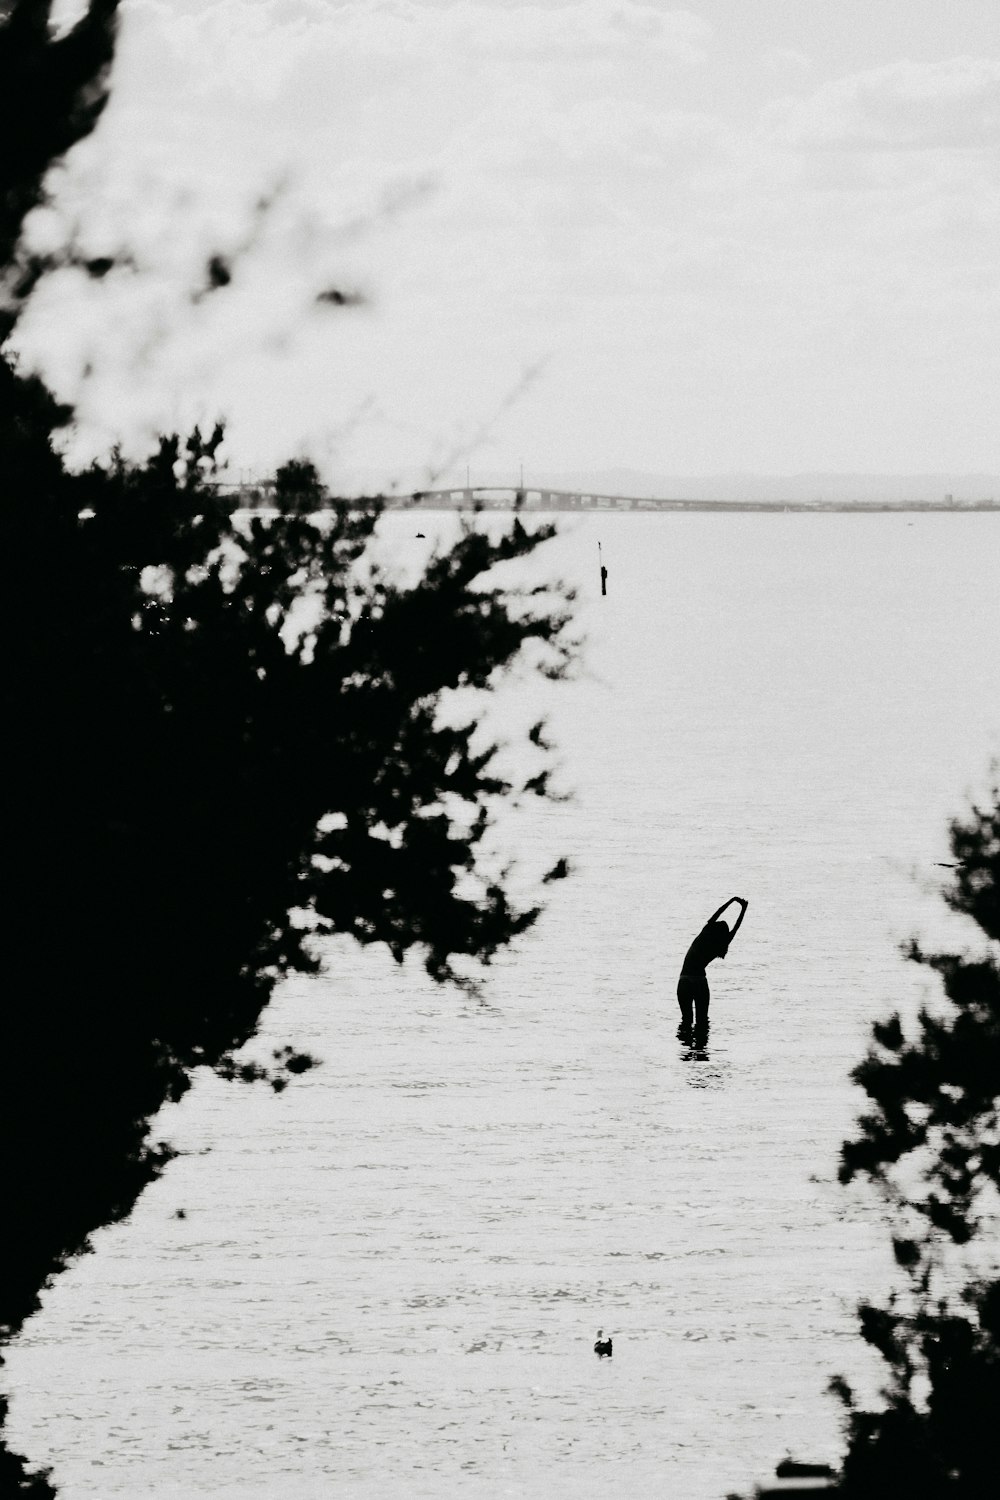 uma pessoa em pé em um corpo de água com árvores ao redor